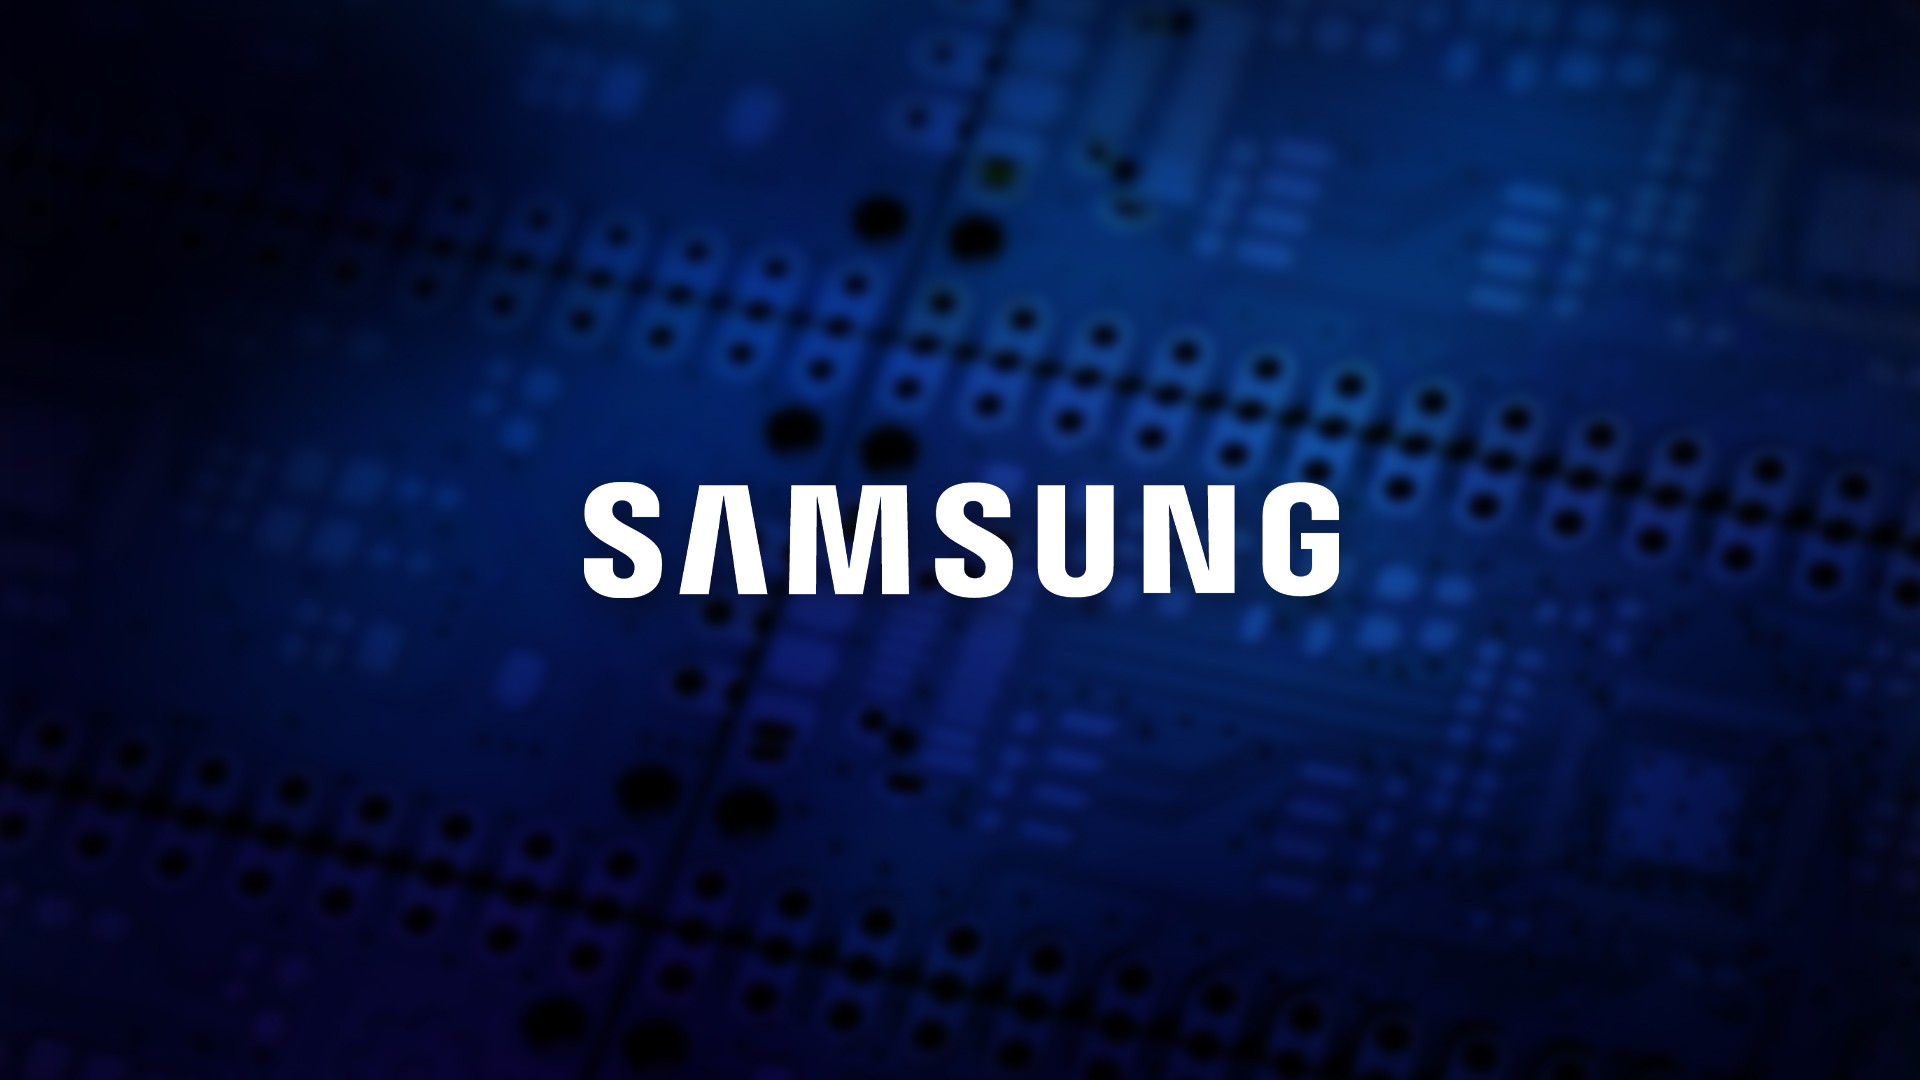 Adeus, TSMC? AMD e Qualcomm podem ser as primeiras a utilizarem processo de 3 nm da Samsung